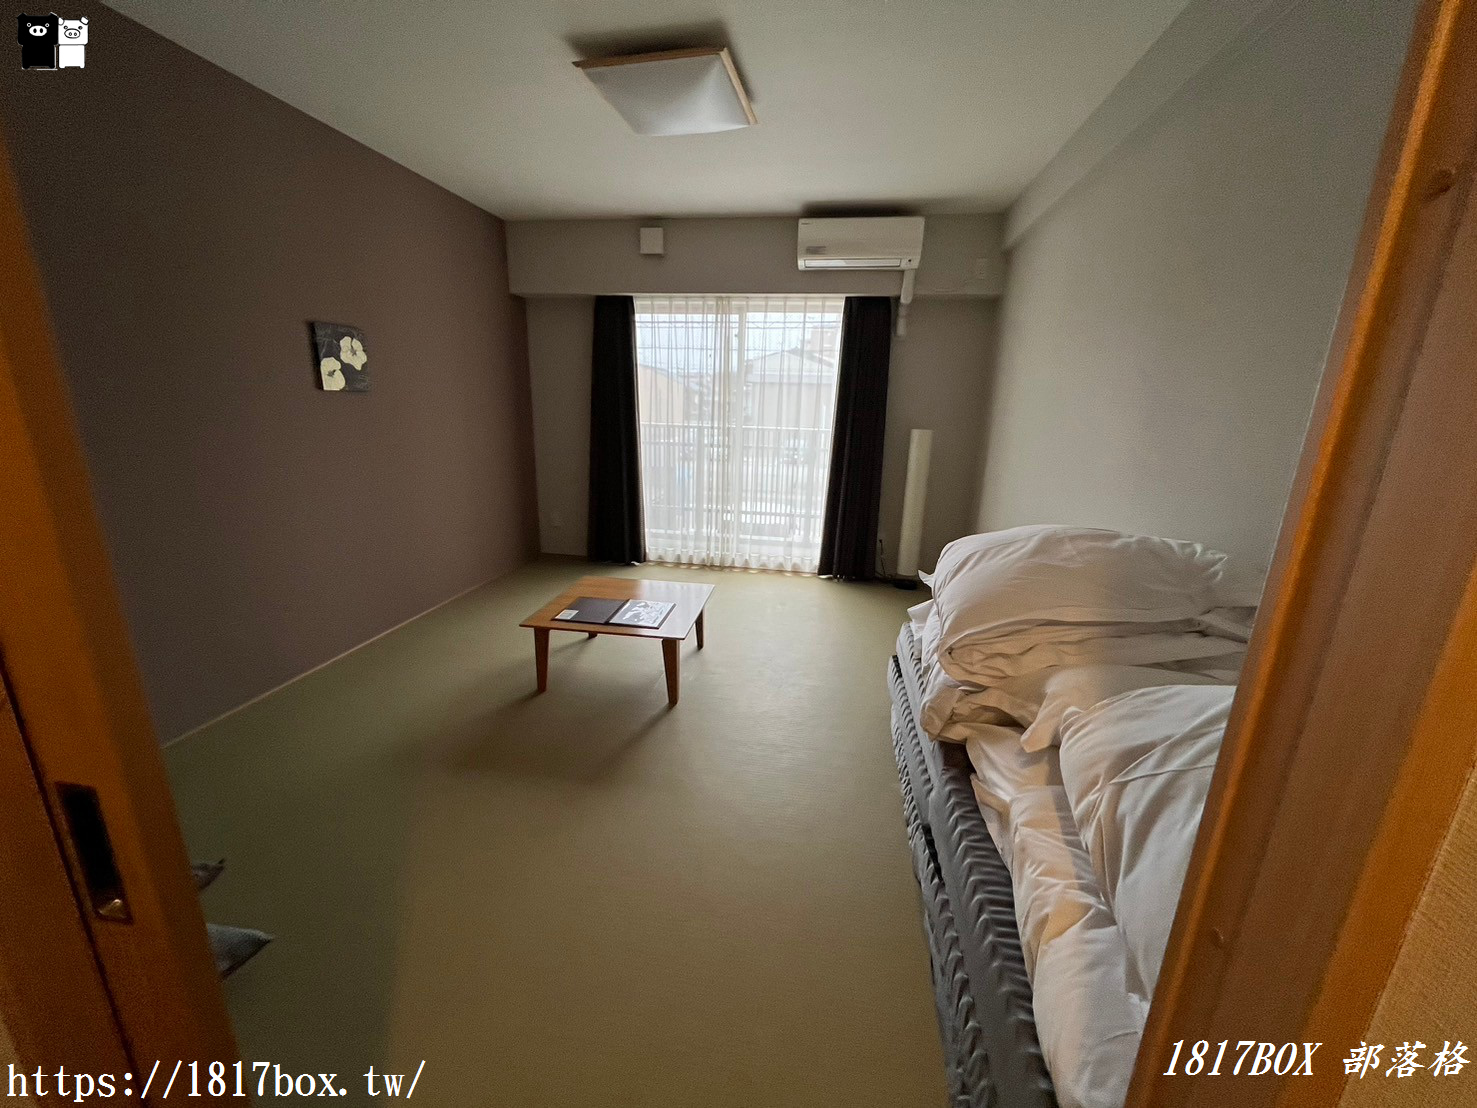 【京都住宿】日本首間教會旅館。HOTEL ECCLESIA。住宿費用10%做善事